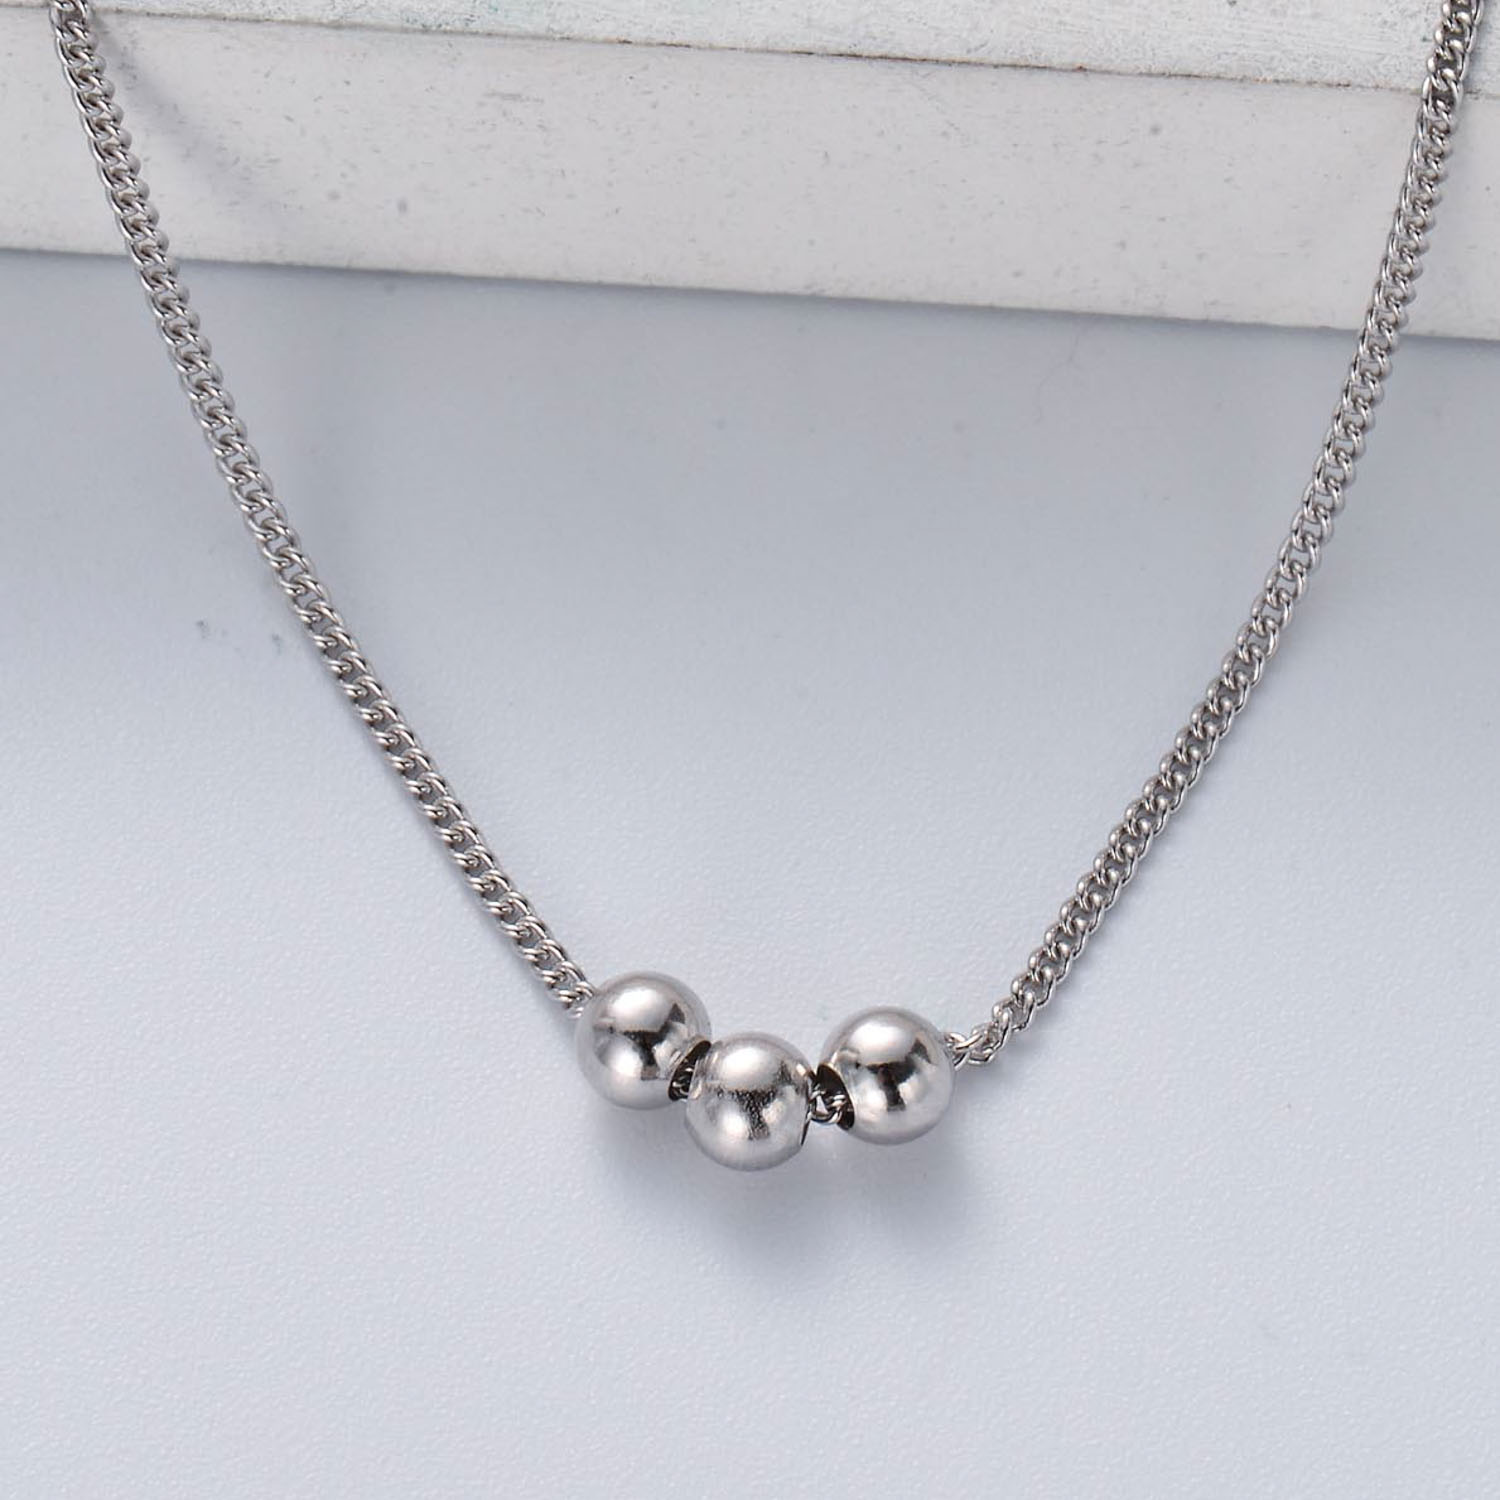 cadena de plata 925 estilo en moda para mujer color silver con bolitas